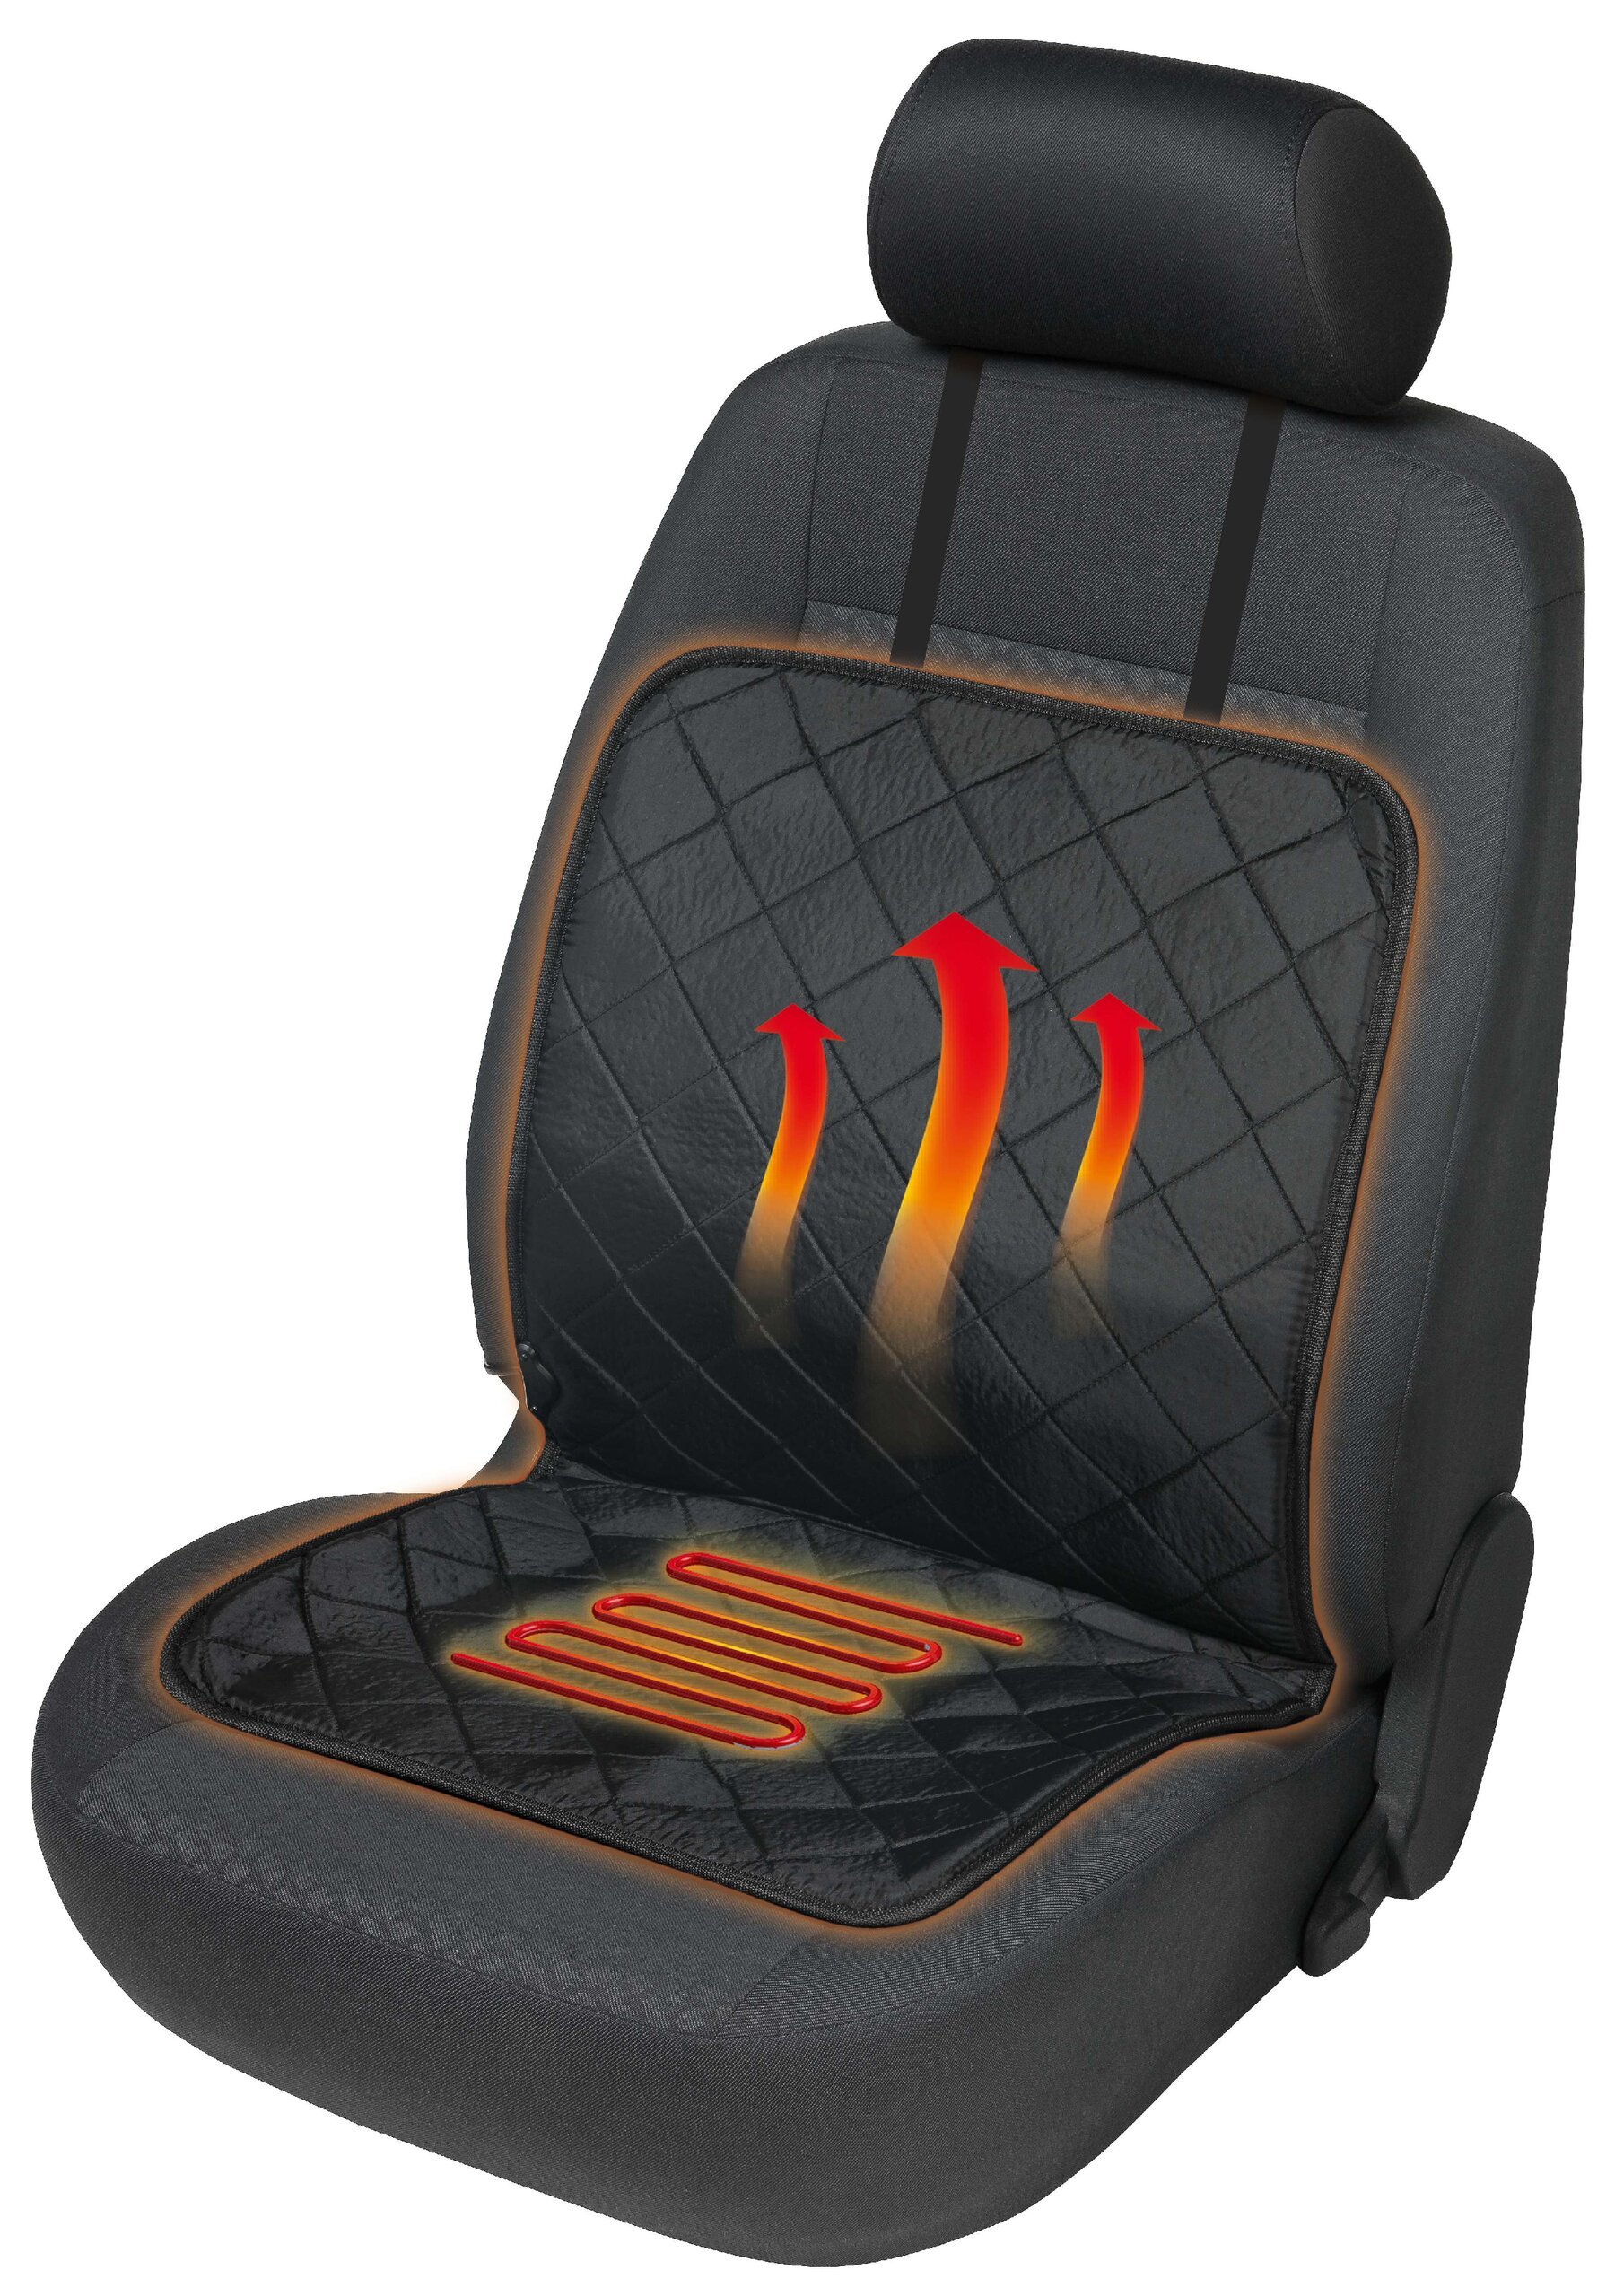 seggiolino auto riscaldamento pad riscaldamento sedile Eco Heat nero